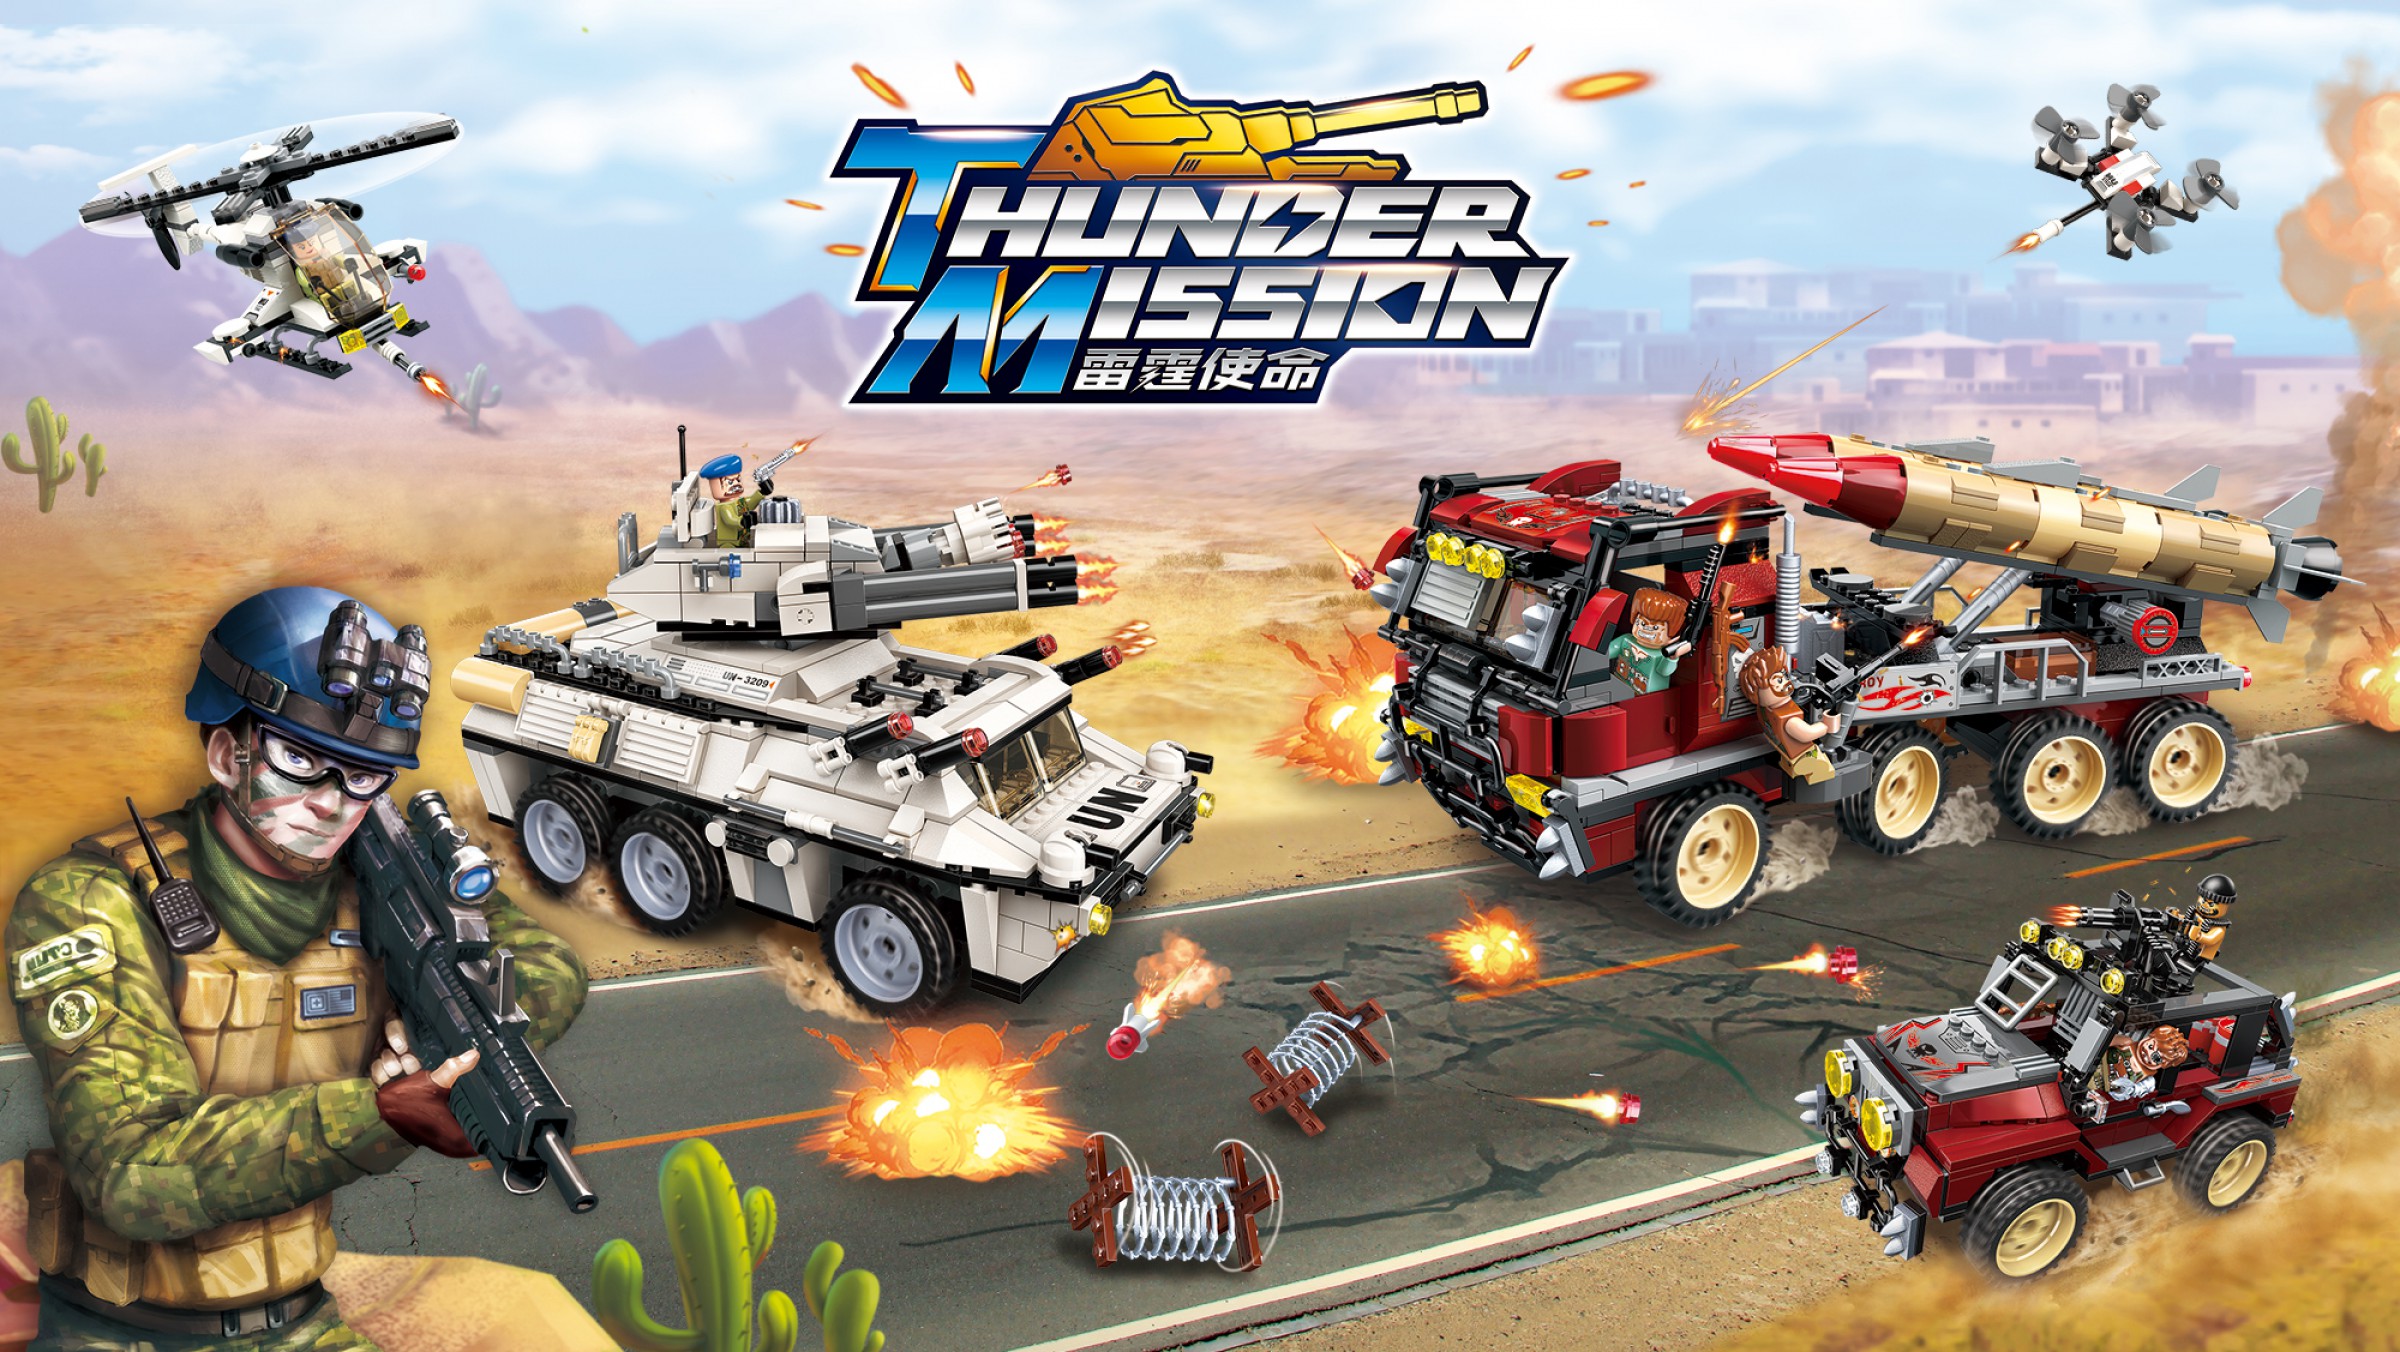 Lego-Qman-Tunder Mission